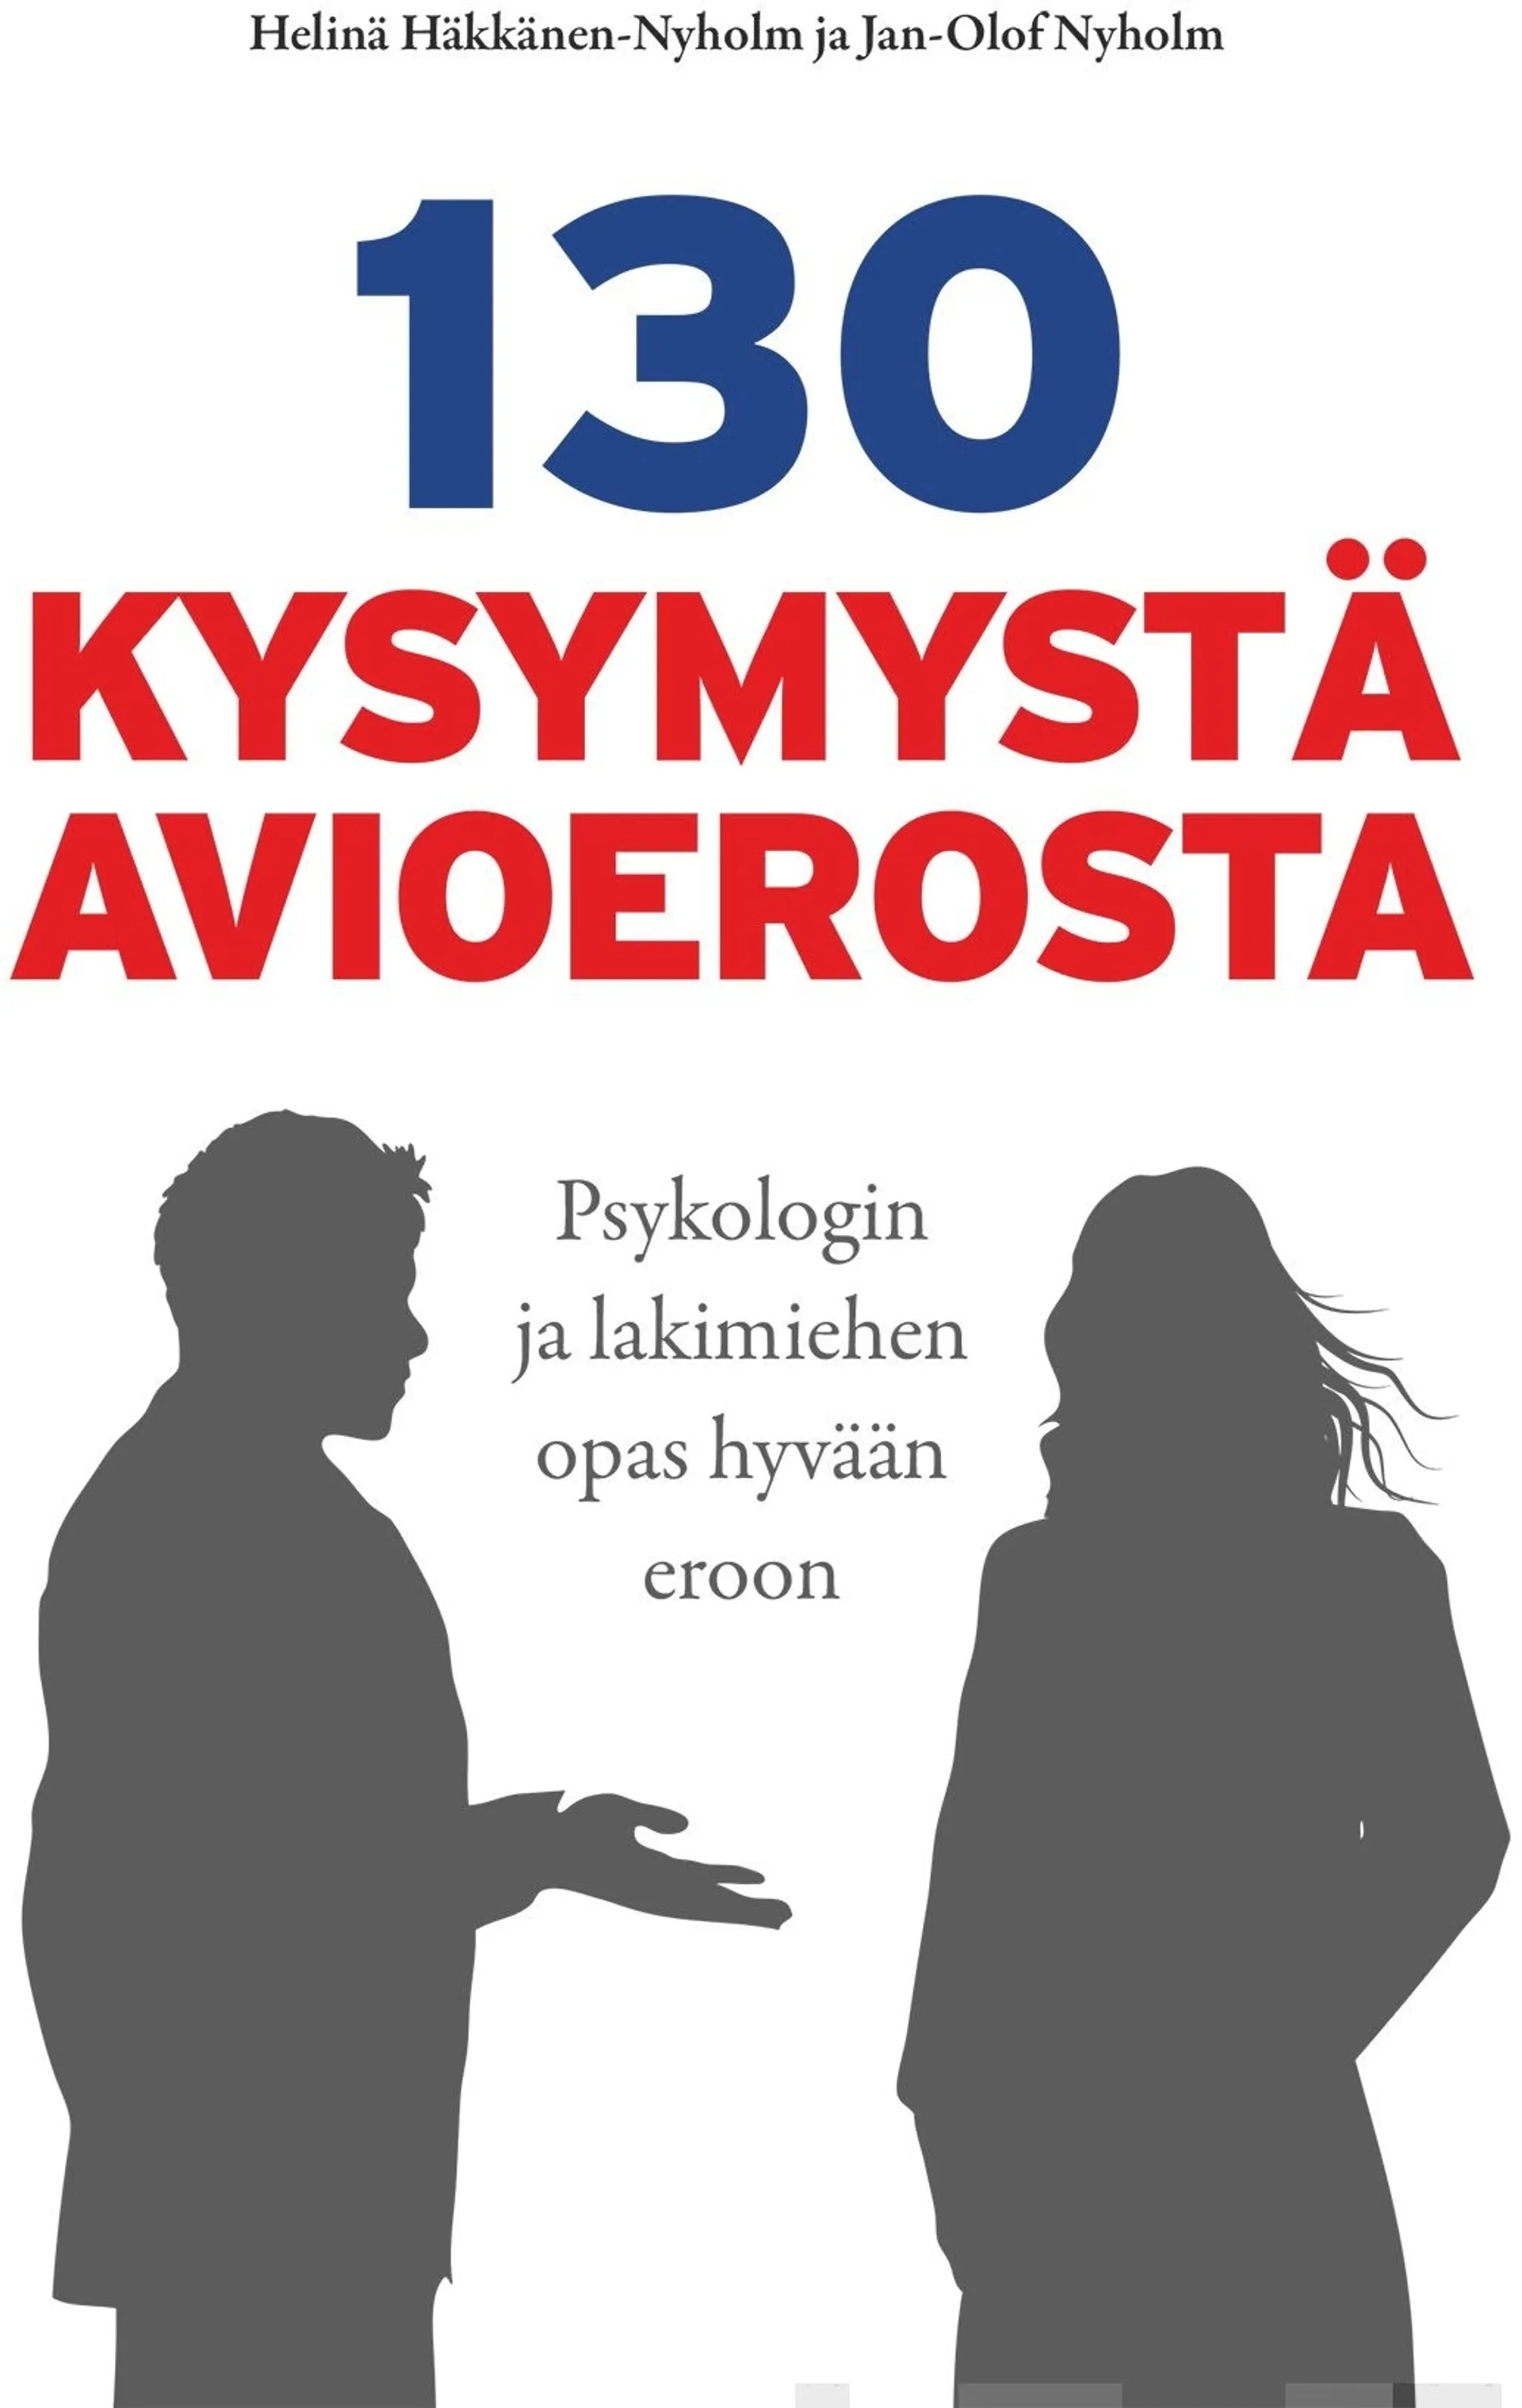 Häkkänen-Nyholm, 130 kysymystä avioerosta